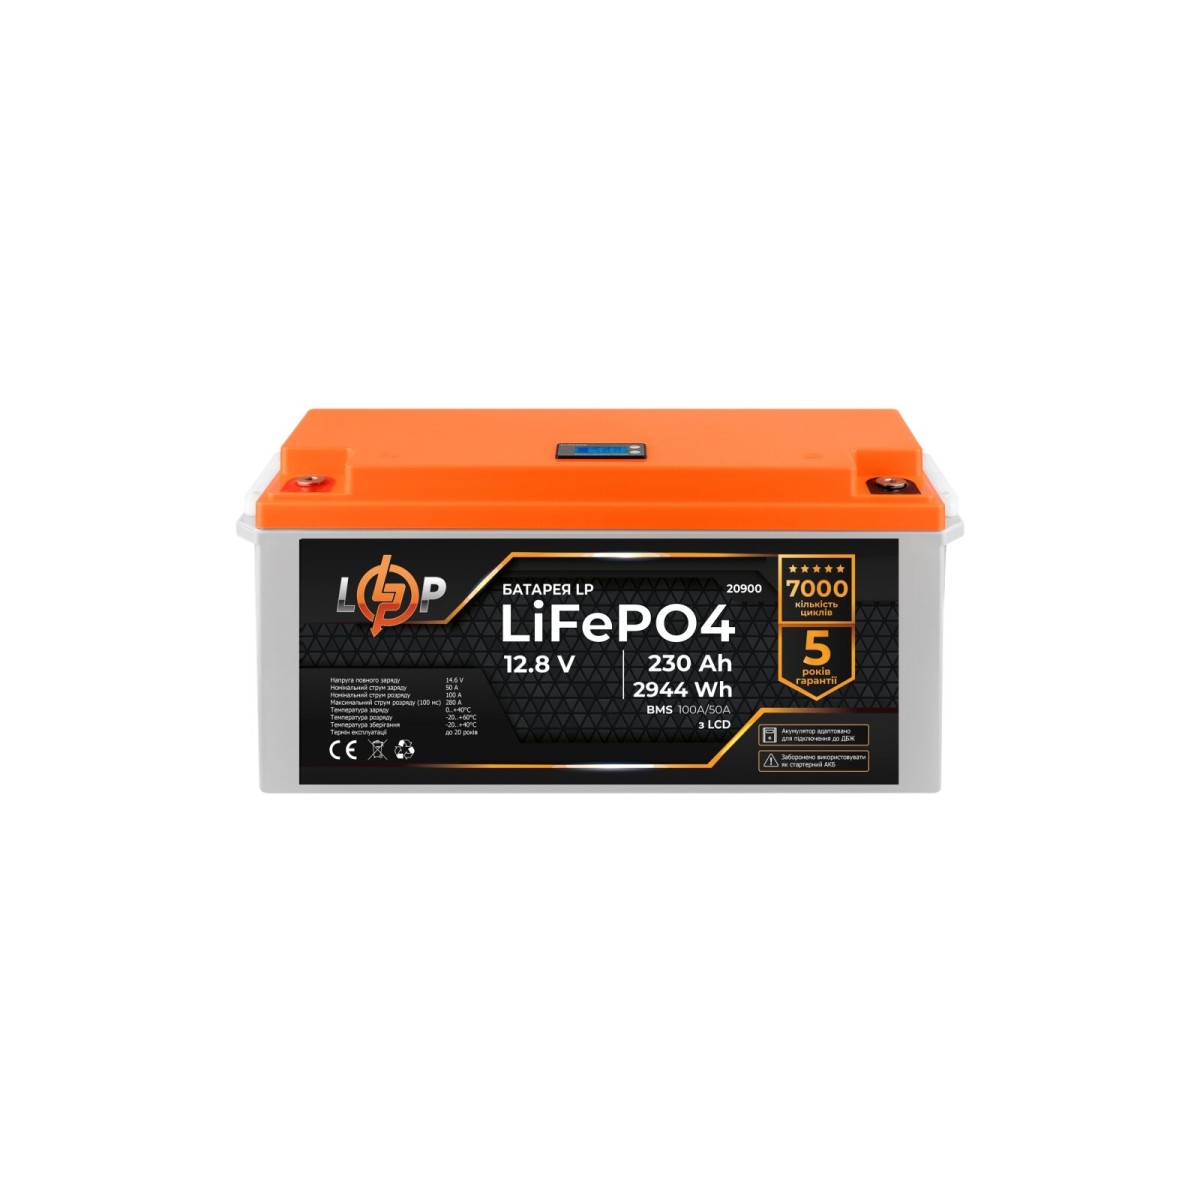 Акумулятор LP LiFePO4 для ДБЖ LCD 12V (12,8V) - 230 Ah (2944Wh) (BMS 100A/50A) пластик 256_256.jpg